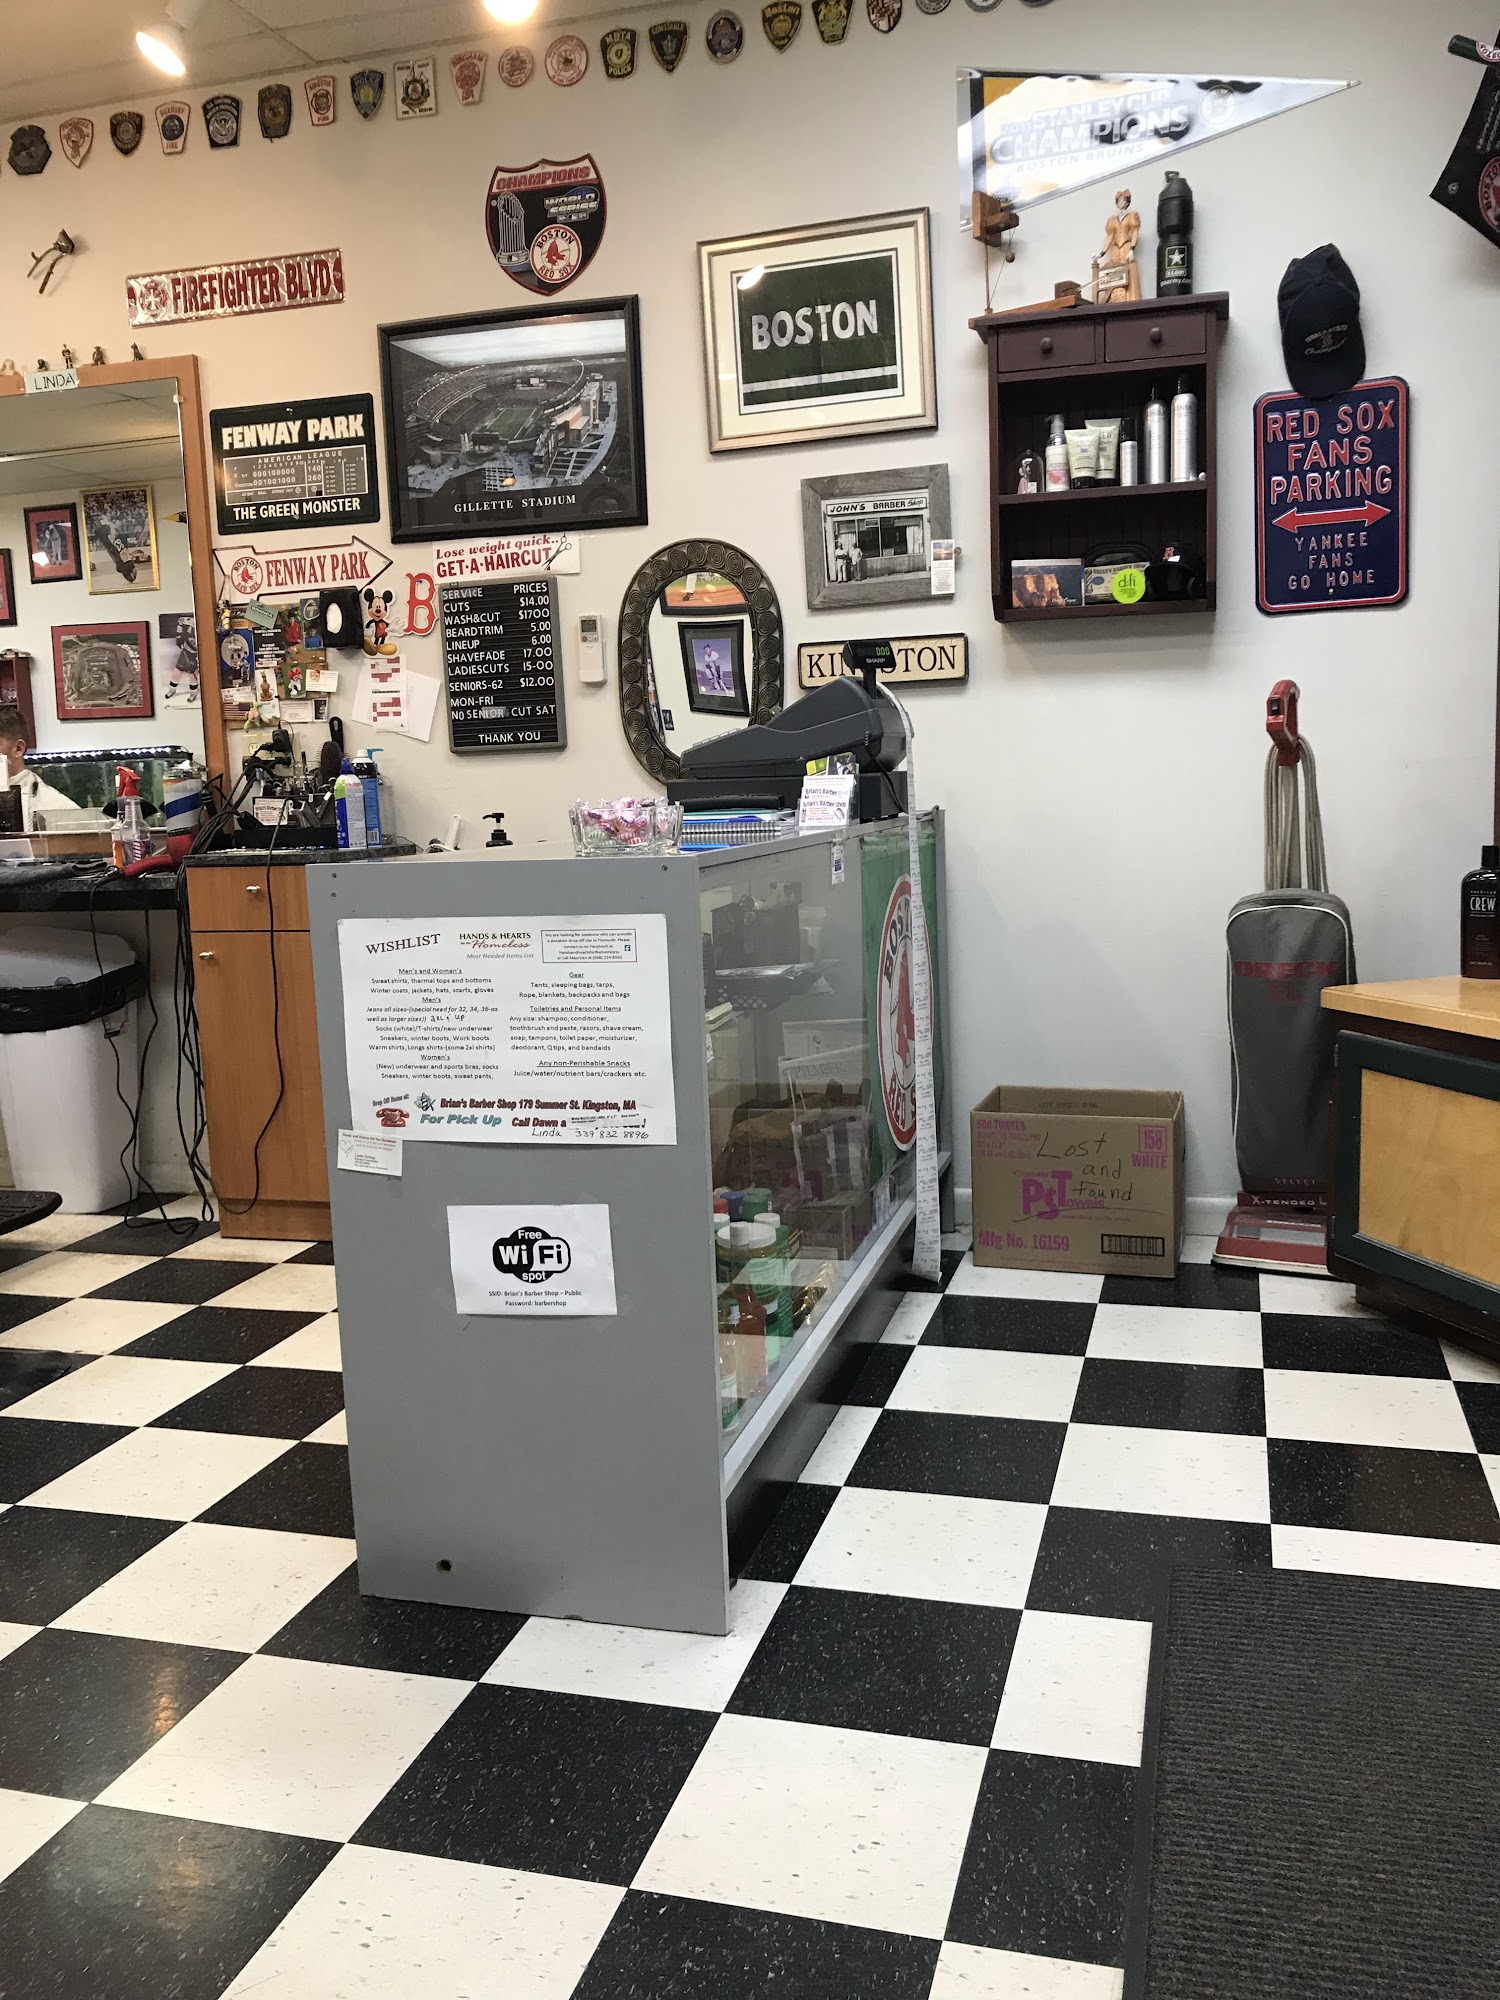 Brian's Barber Shop